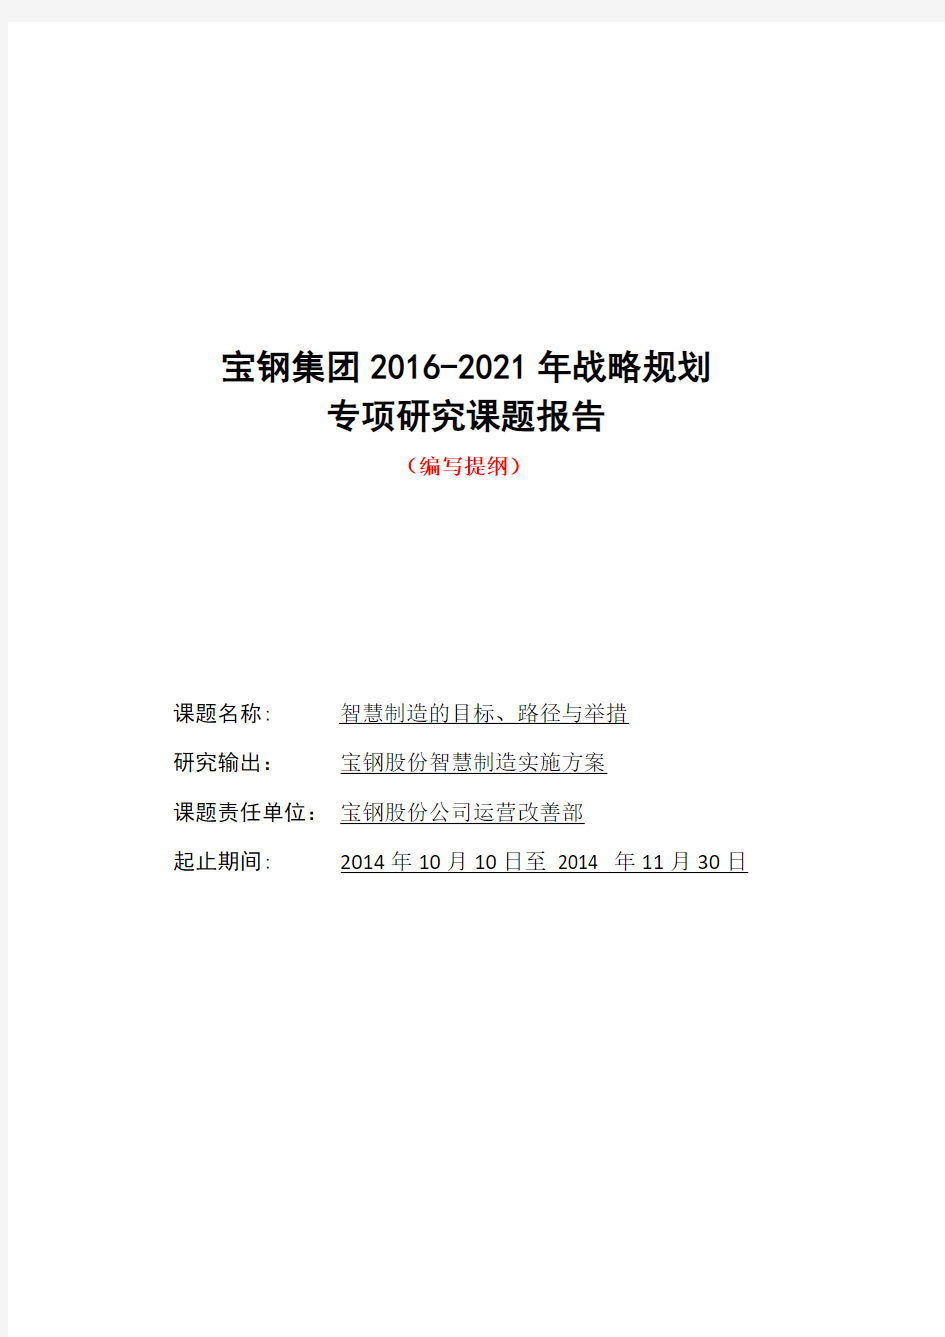 宝钢集团2016-2021年战略规划课题研究报告(编写提纲和参考)